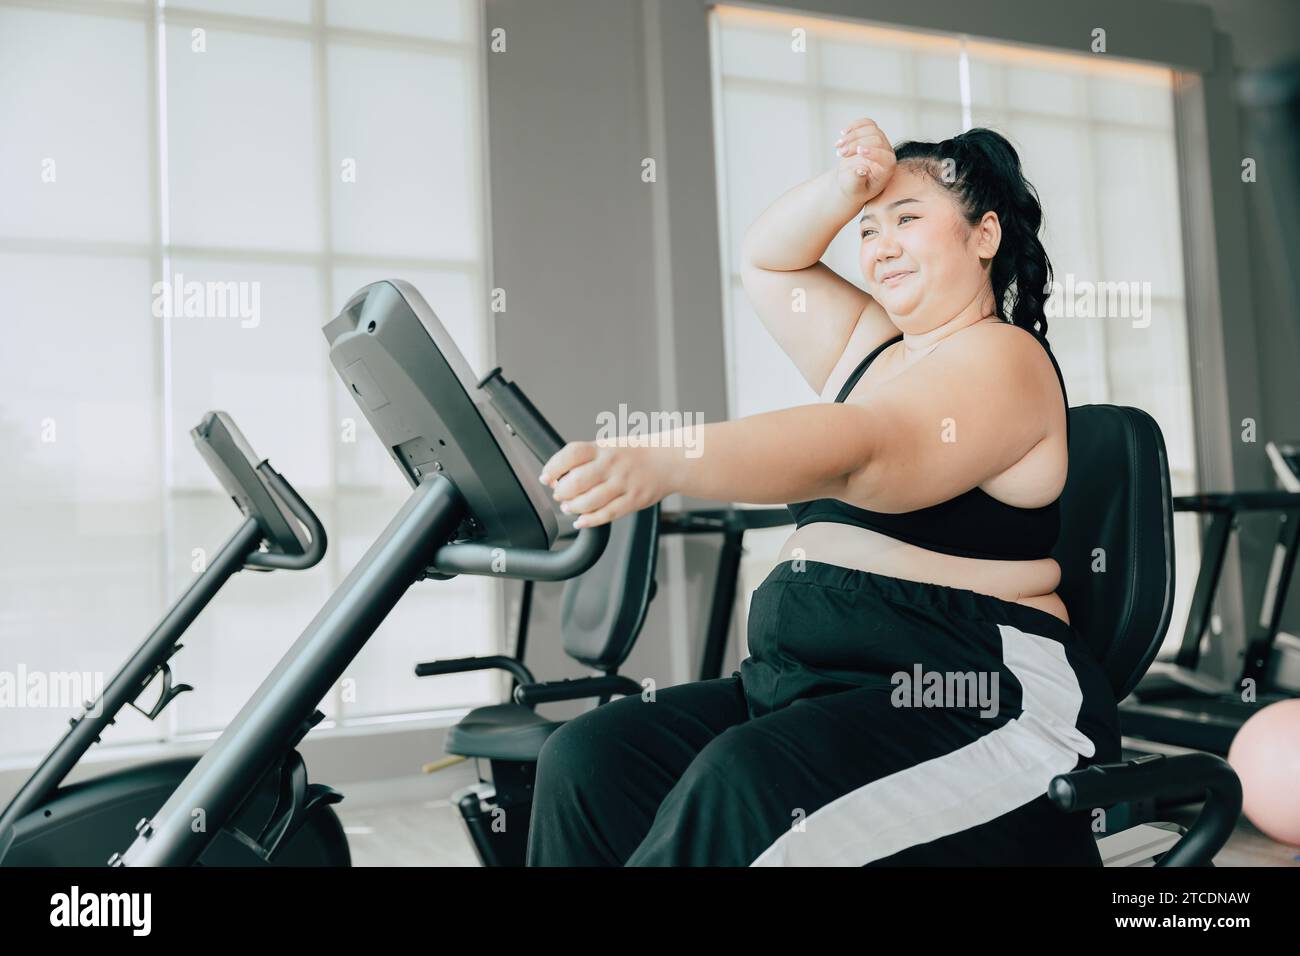 les femmes grasses saines asiatique plus dame de taille faisant des exercices d'entraînement pour perdre du poids les soins de santé du corps dans le fitness du club de sport Banque D'Images